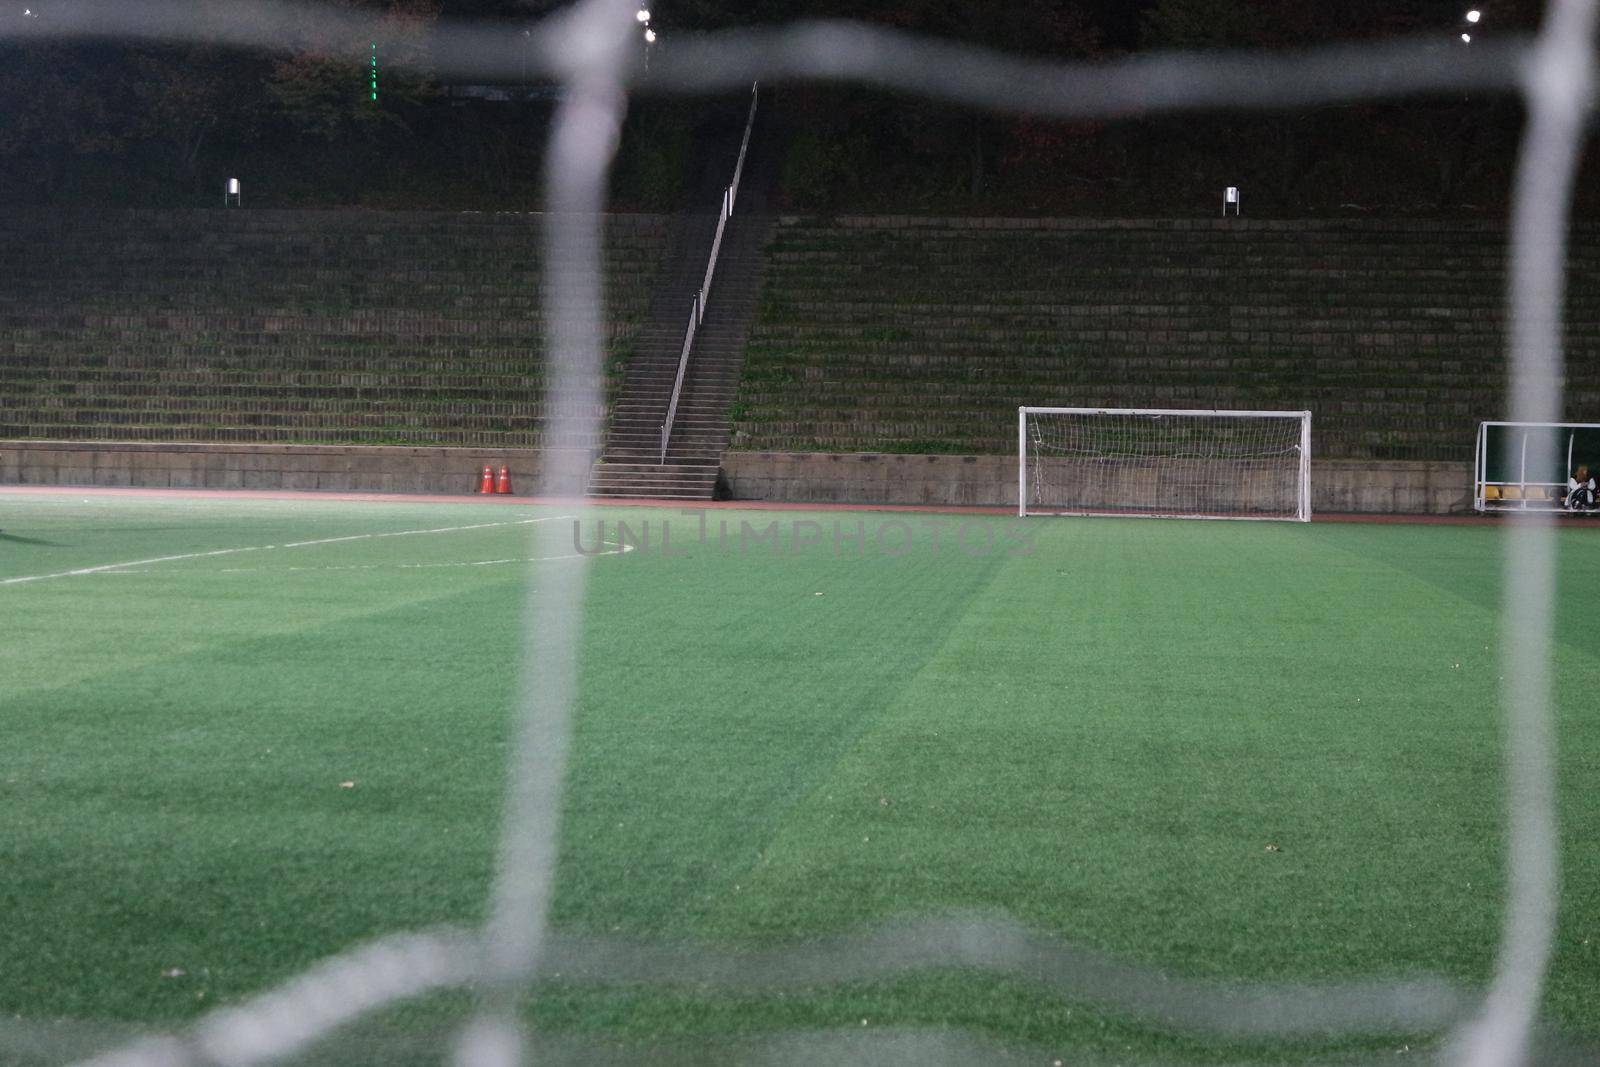 Night view of a soccer goal net under flood lights. Closeup view of goal net in a soccer playground